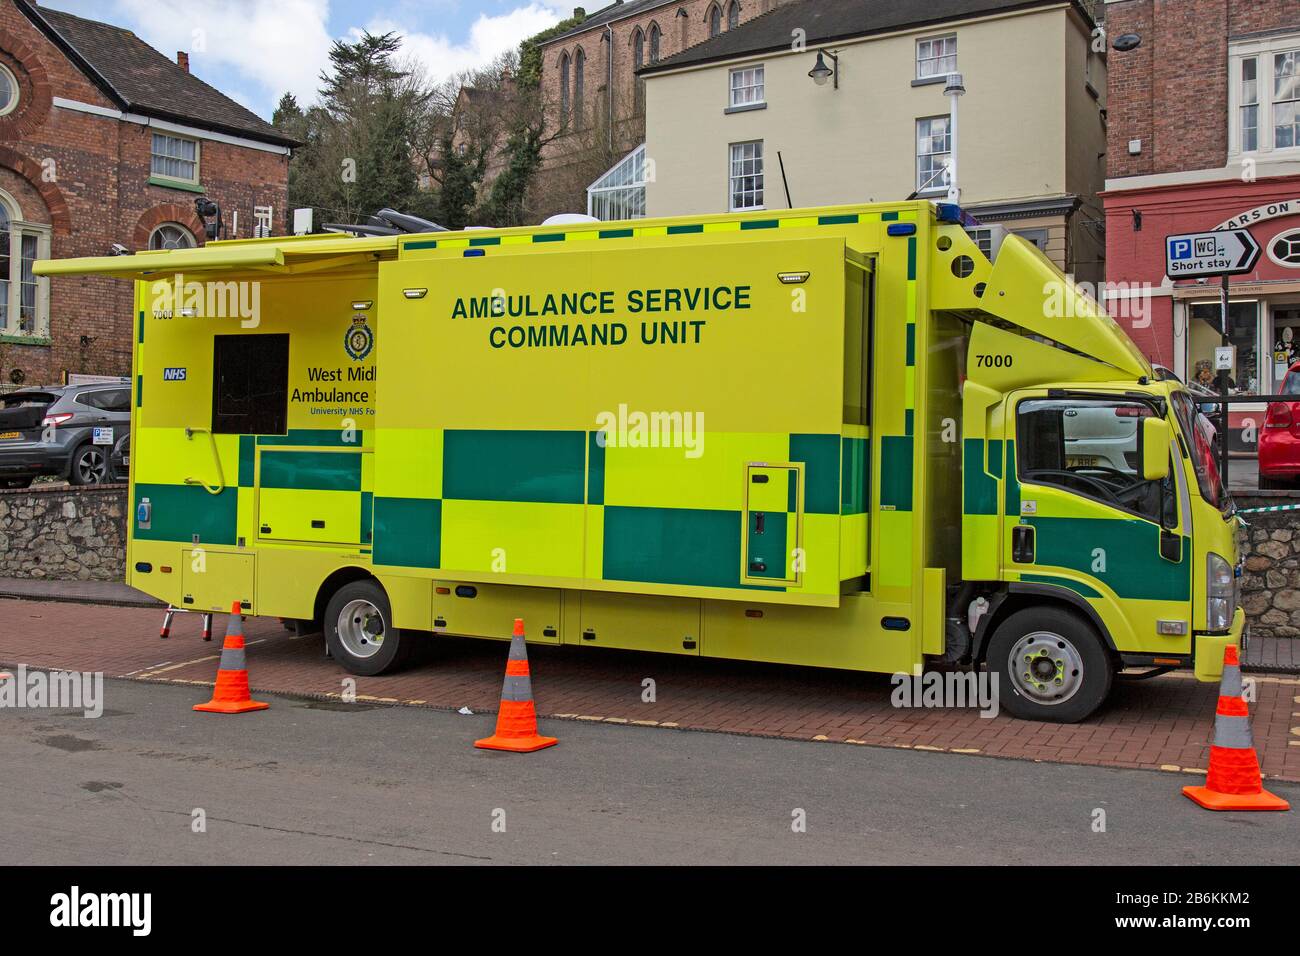 Eine mobile Ambulance Service Command Unit, die vom British National Health Service für Notfallsituationen bereitgestellt wird. Stockfoto